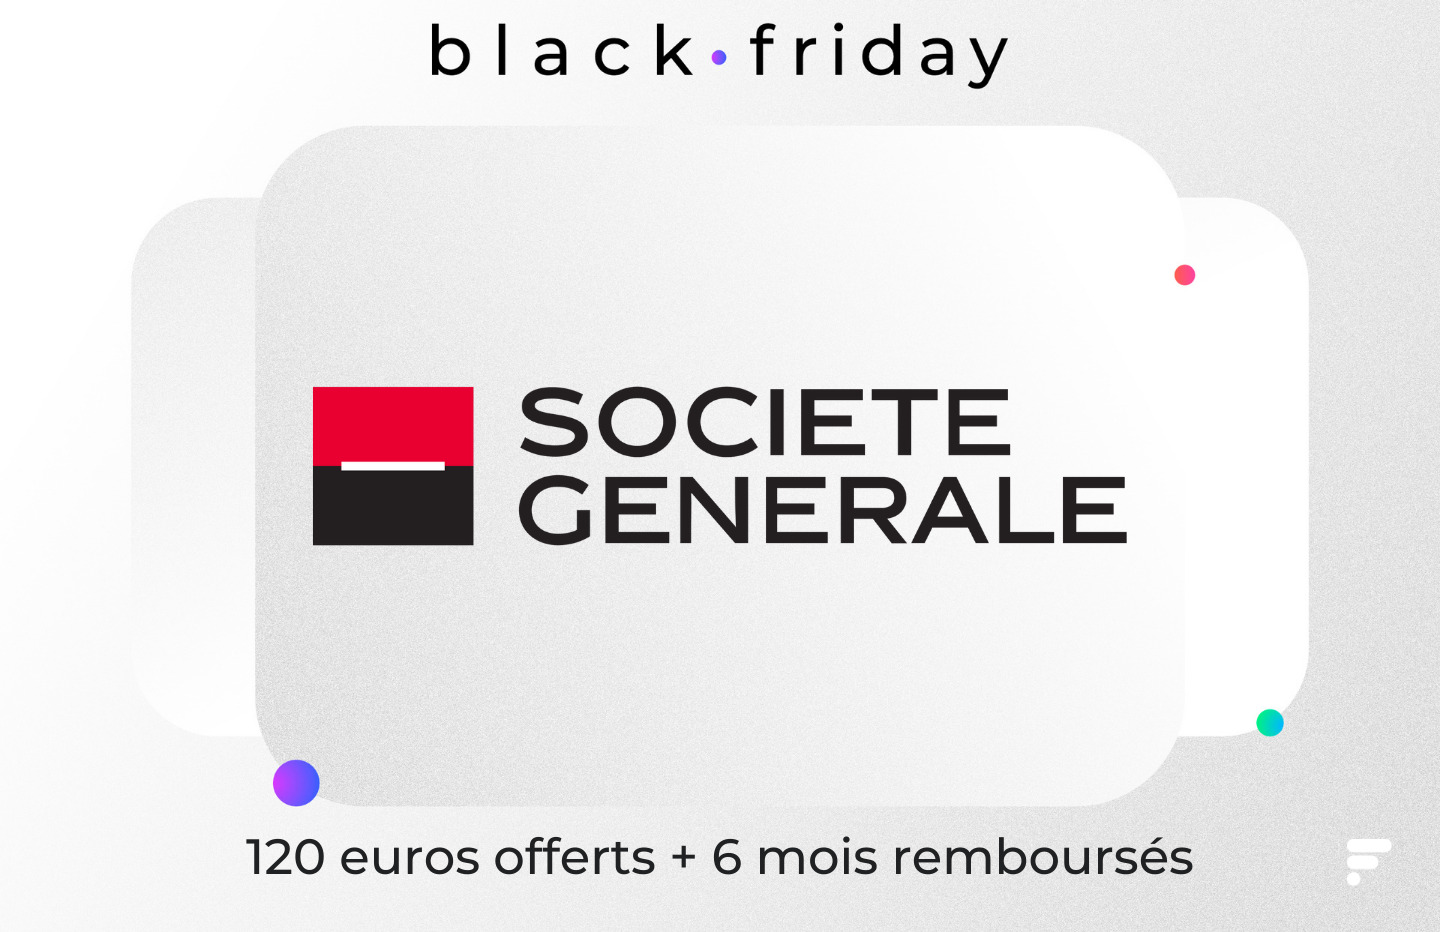 La Société générale fait aussi le Black Friday et offre 120 € + 6 mois remboursés